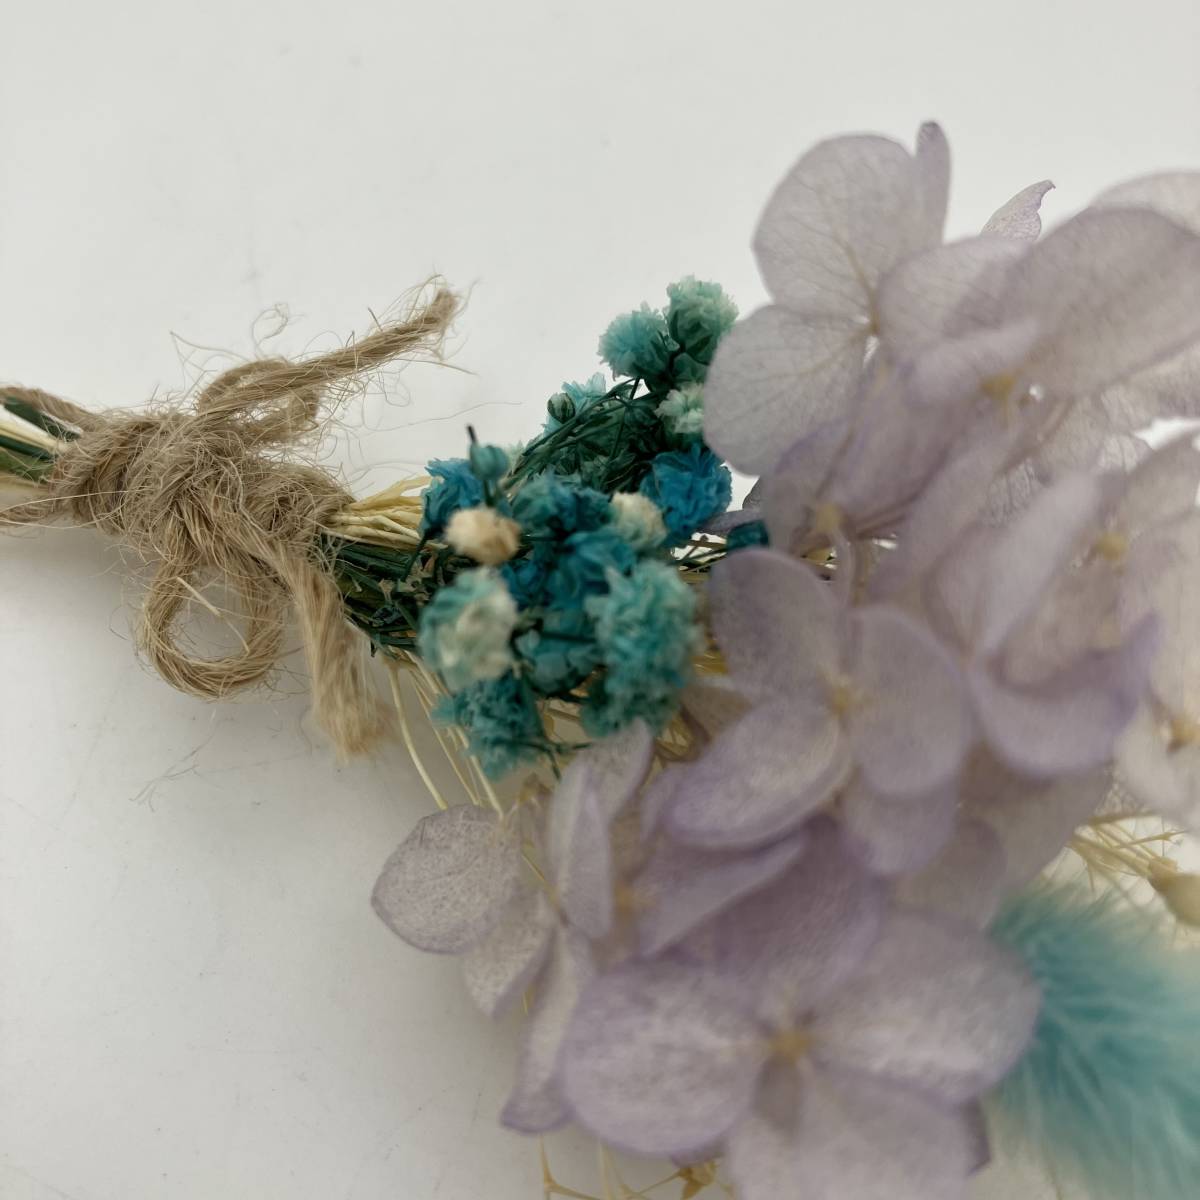  ＜ новый товар ＞... reserve ... цветок   ... ...  цветы  ...  ручной работы    гортензия      ...  фиолетовый    синий   гобелен    украшение      ...     поздравление   подарок   подарок 